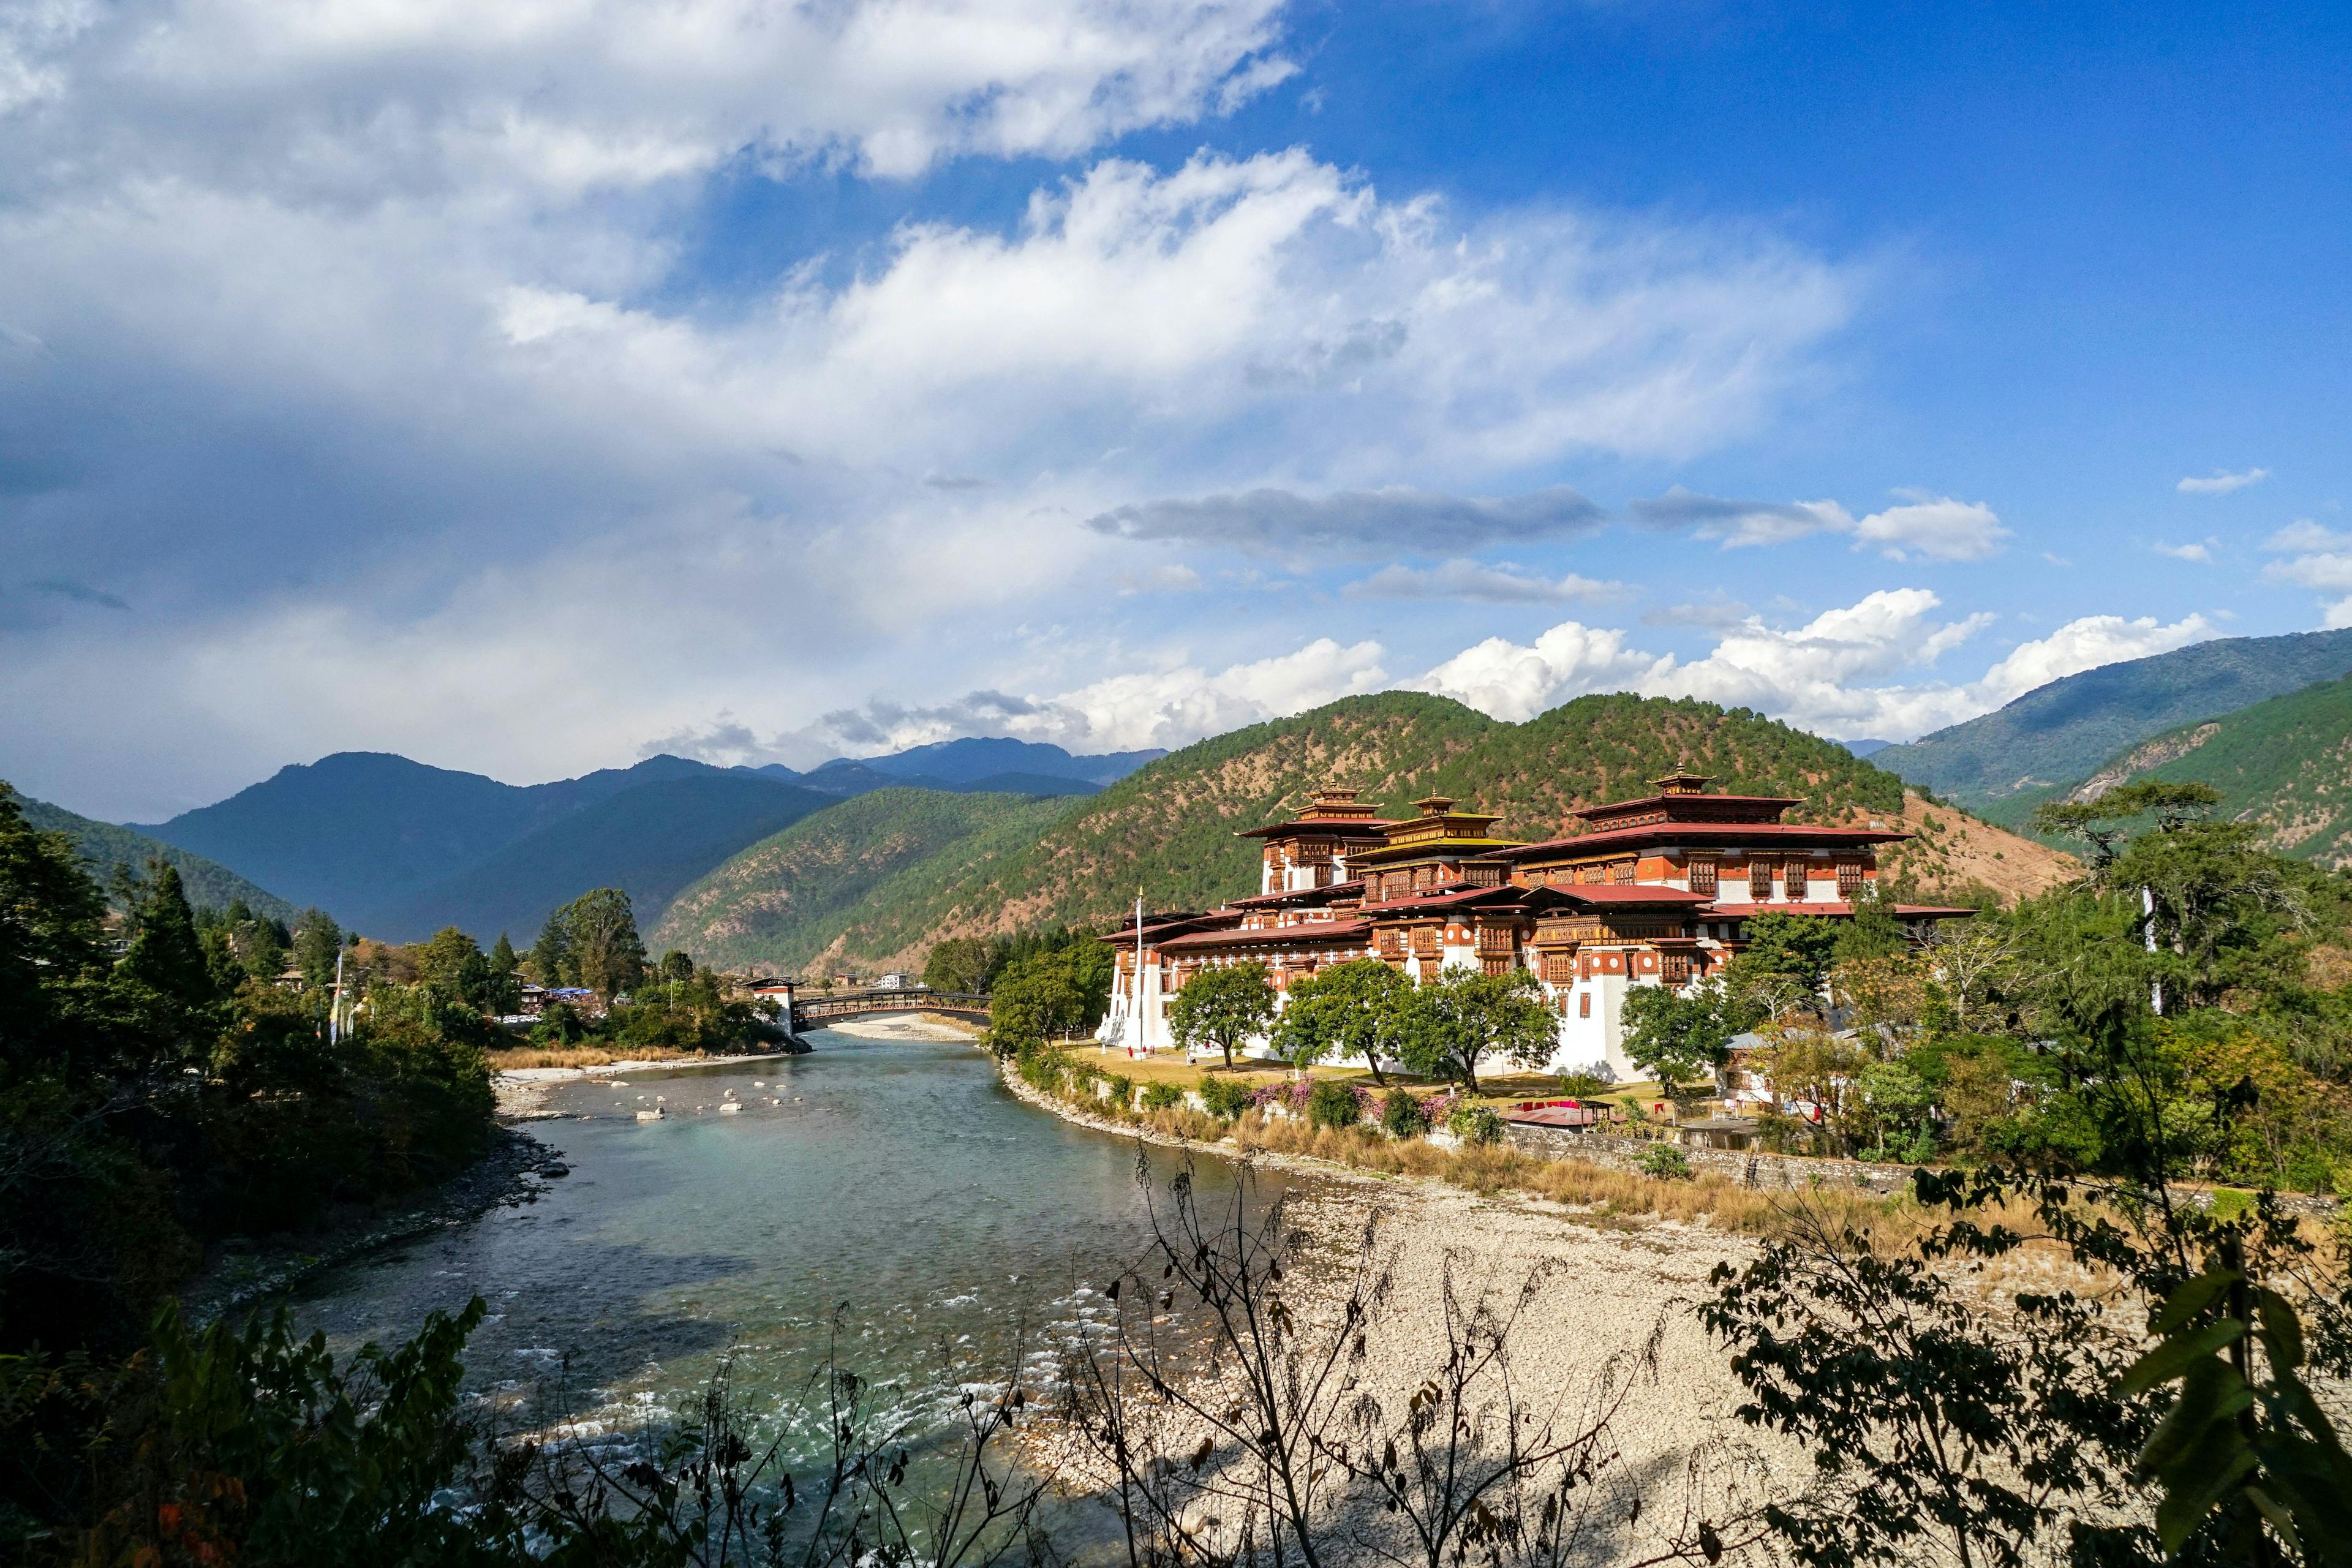 Punakha Dzong located in Bhutan.